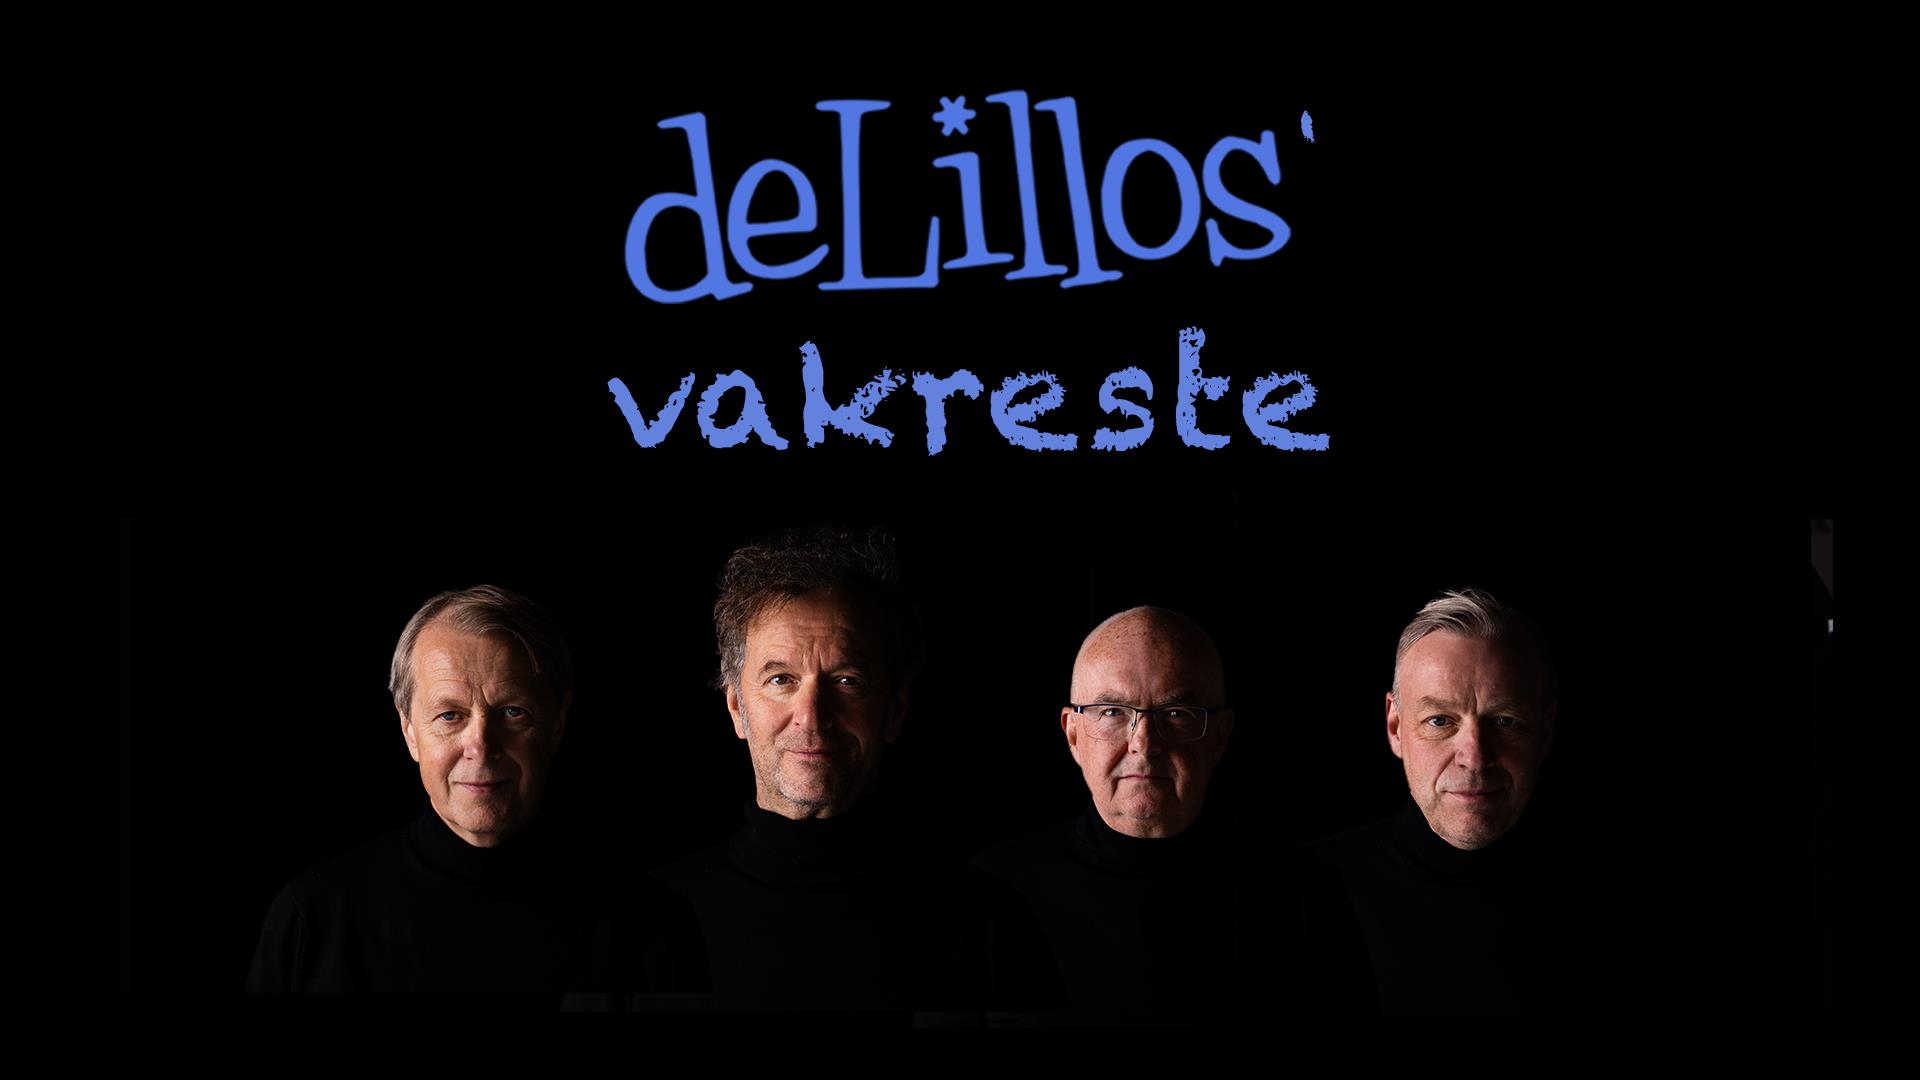 Velkommen til konsert med deLillos’ vakreste!